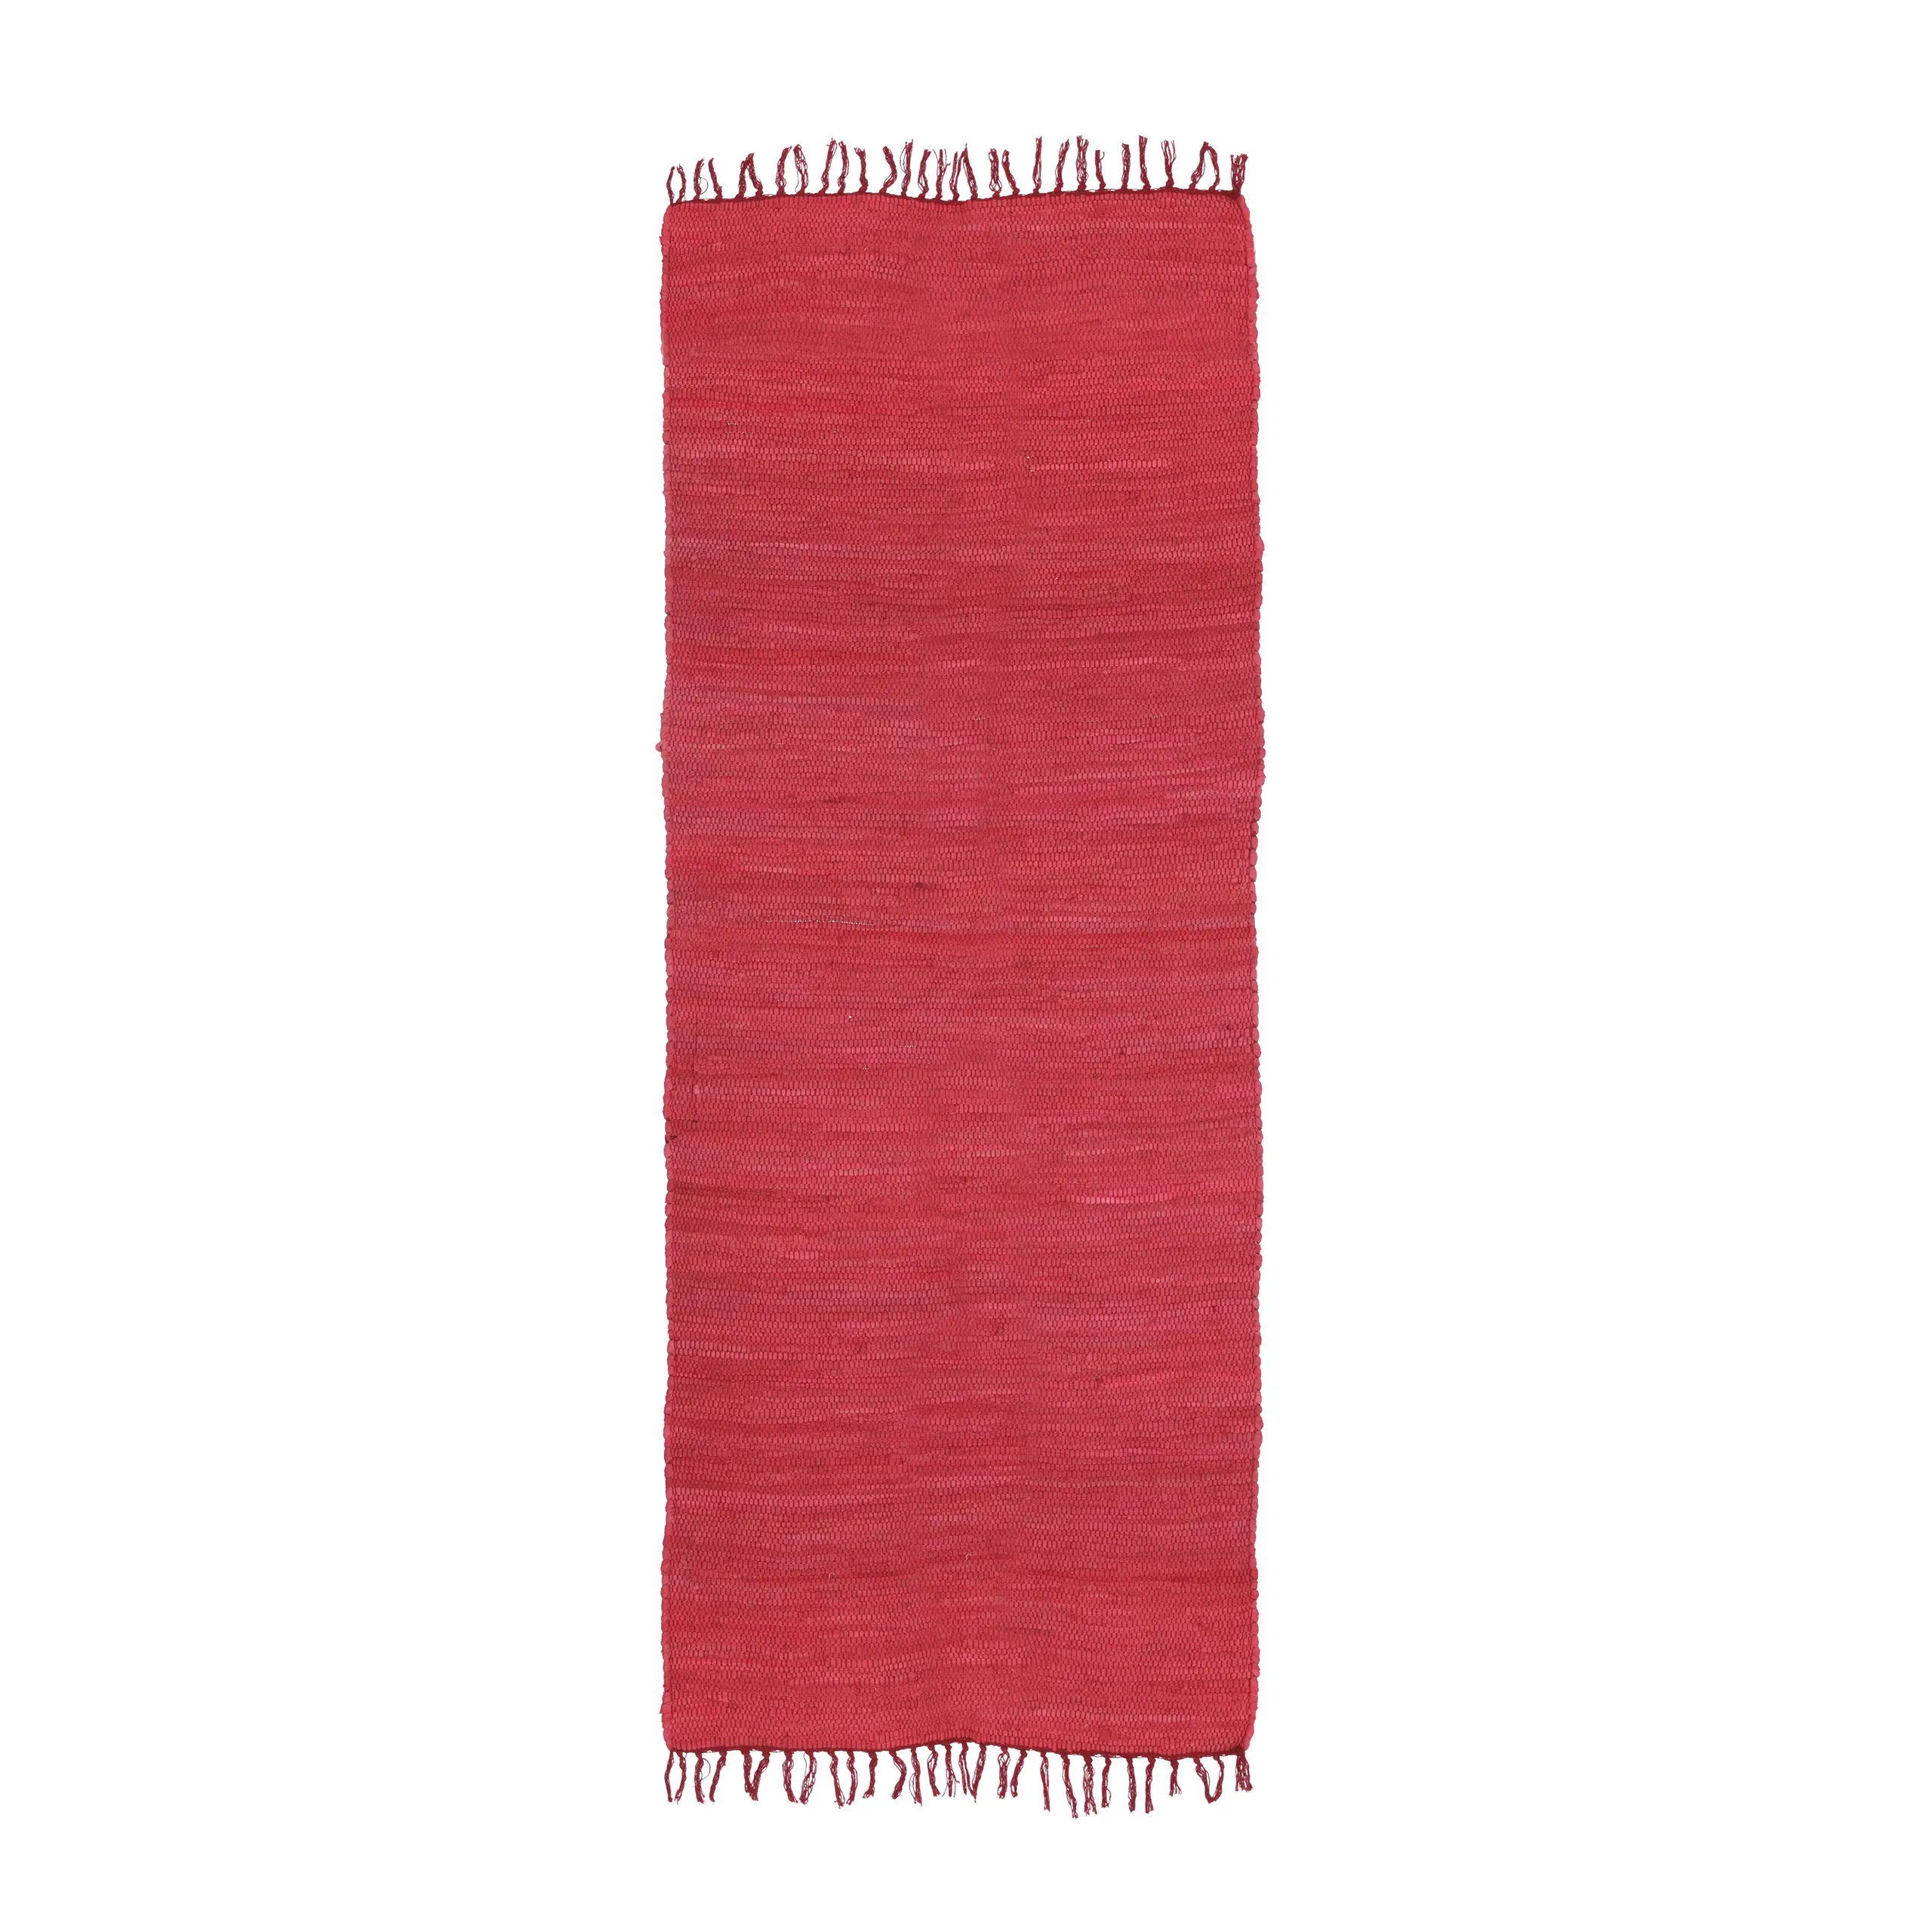 Roter Flickenteppich aus Baumwolle